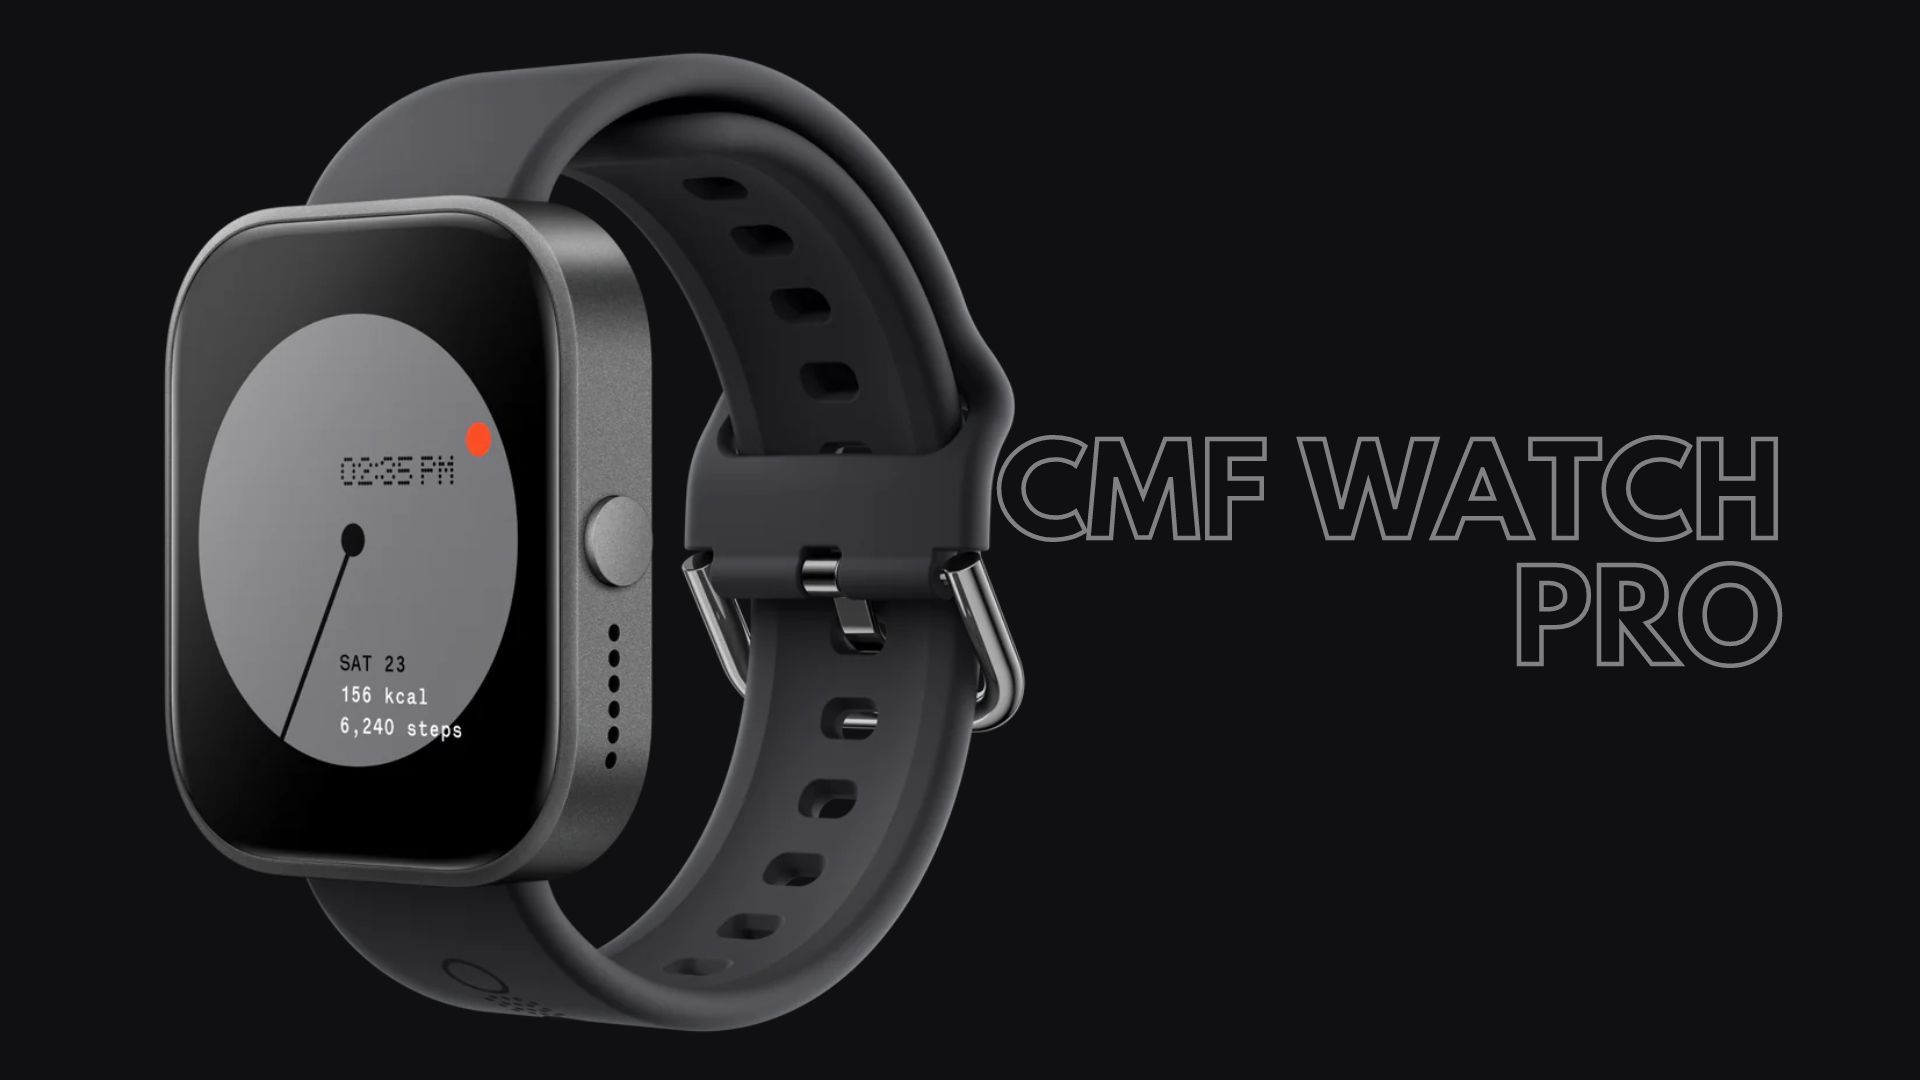 CMF Watch Pro dilengkapi dengan berbagai sensor kesehatan yang penting, termasuk sensor detak jantung dan saturasi oksigen darah.